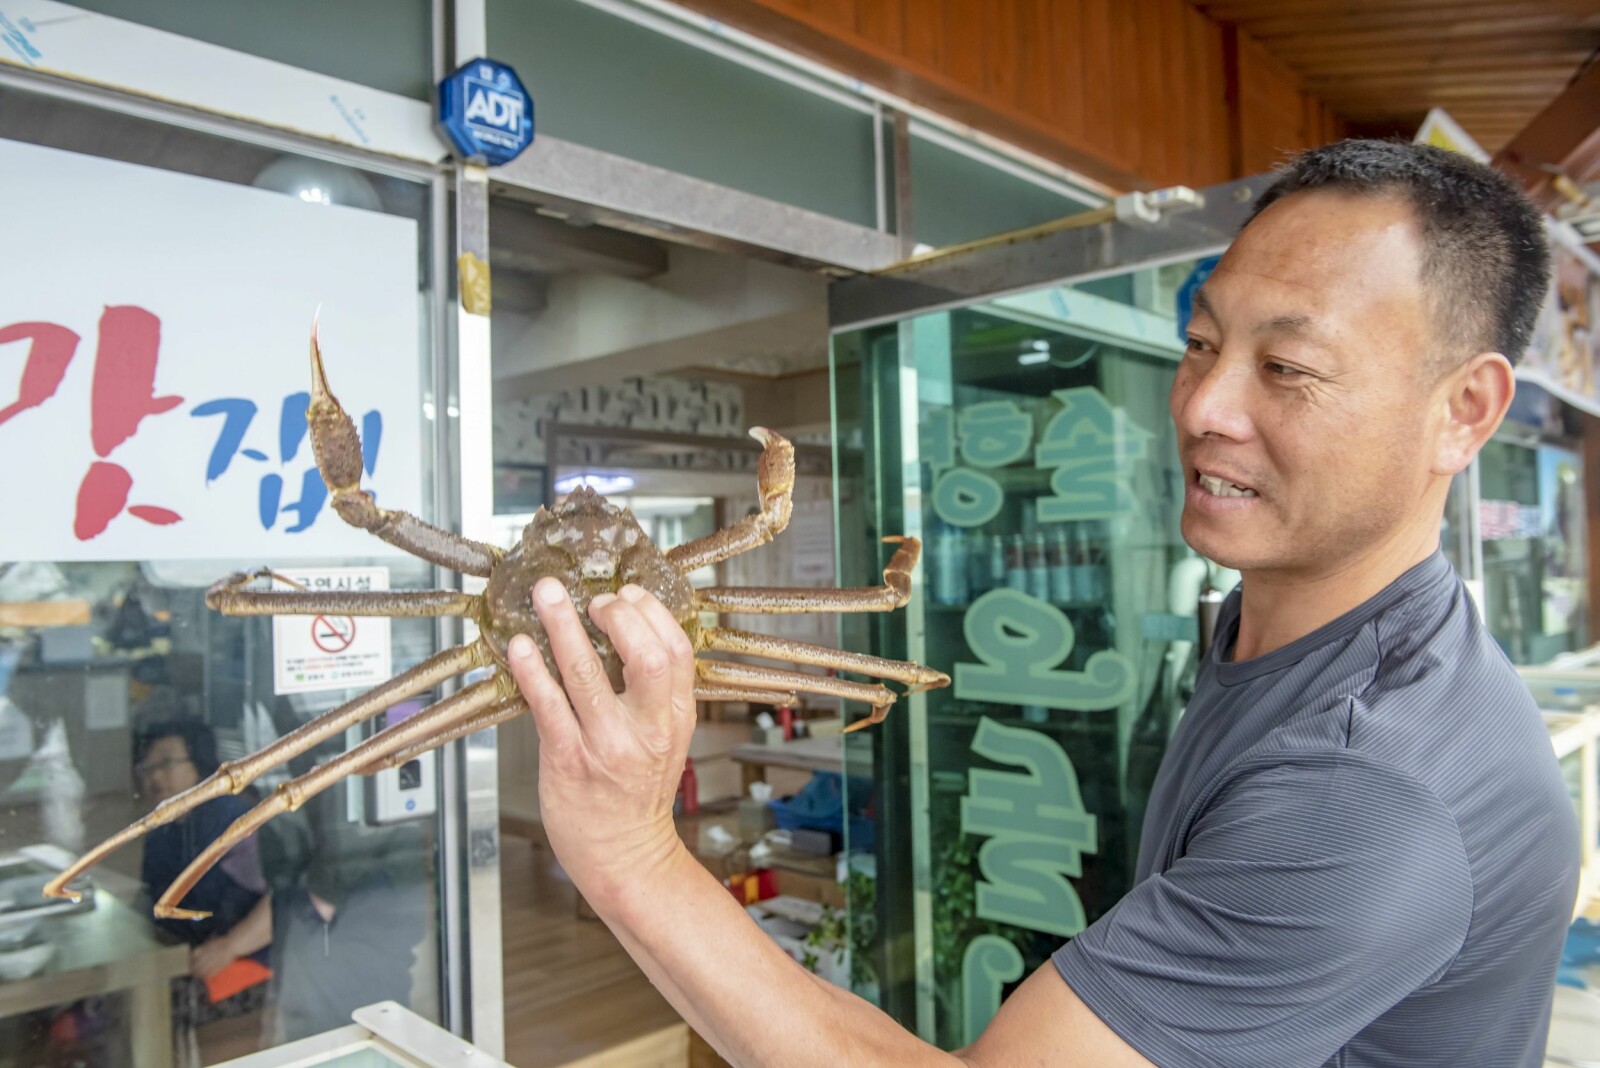 <b>KRABBELARS:</b> Det er en rik kystkultur rundt Yangyang. Den lille byen Jumunjin er kjent for sitt fiskemarked. Bodene tilbyr kongekrabber, blekksprut, fisk, skjell og mye mer.